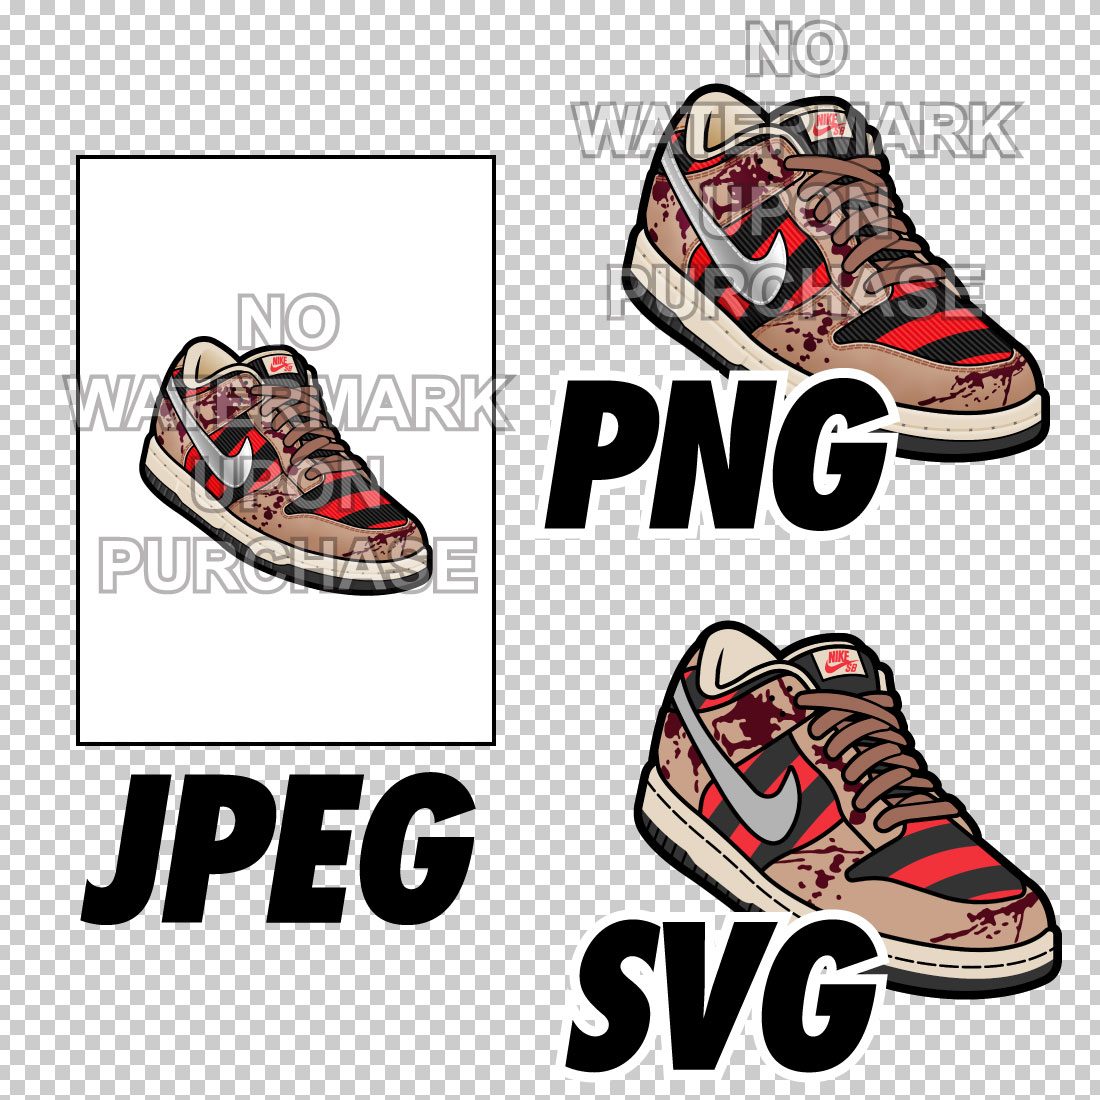 Dunk Low Freddy Krueger JPEG PNG SVG Left & Right bundle Sneaker Art digital download preview image.